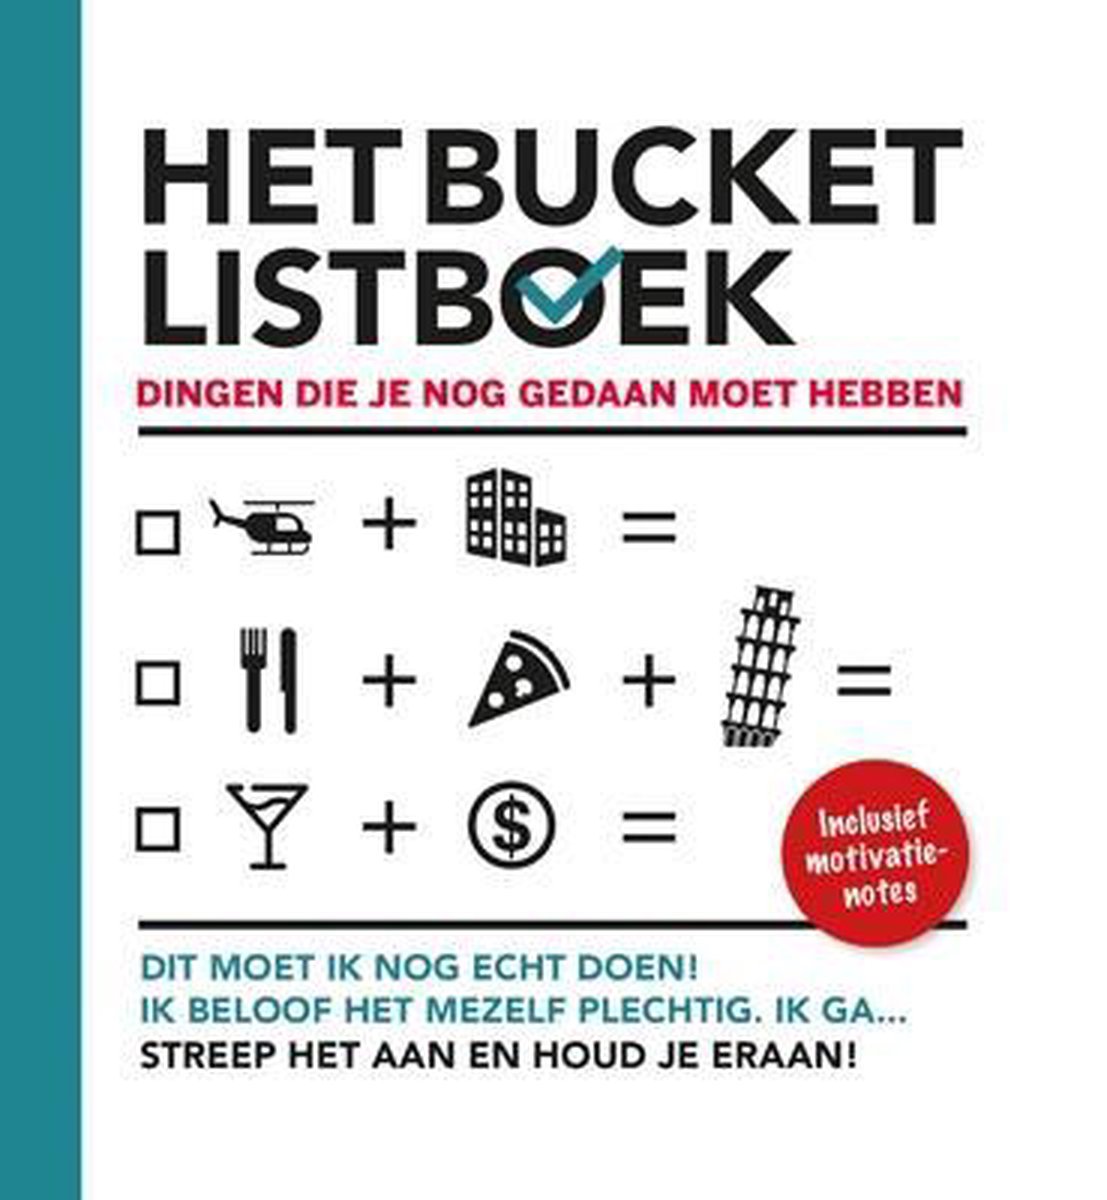 Het bucket listboek